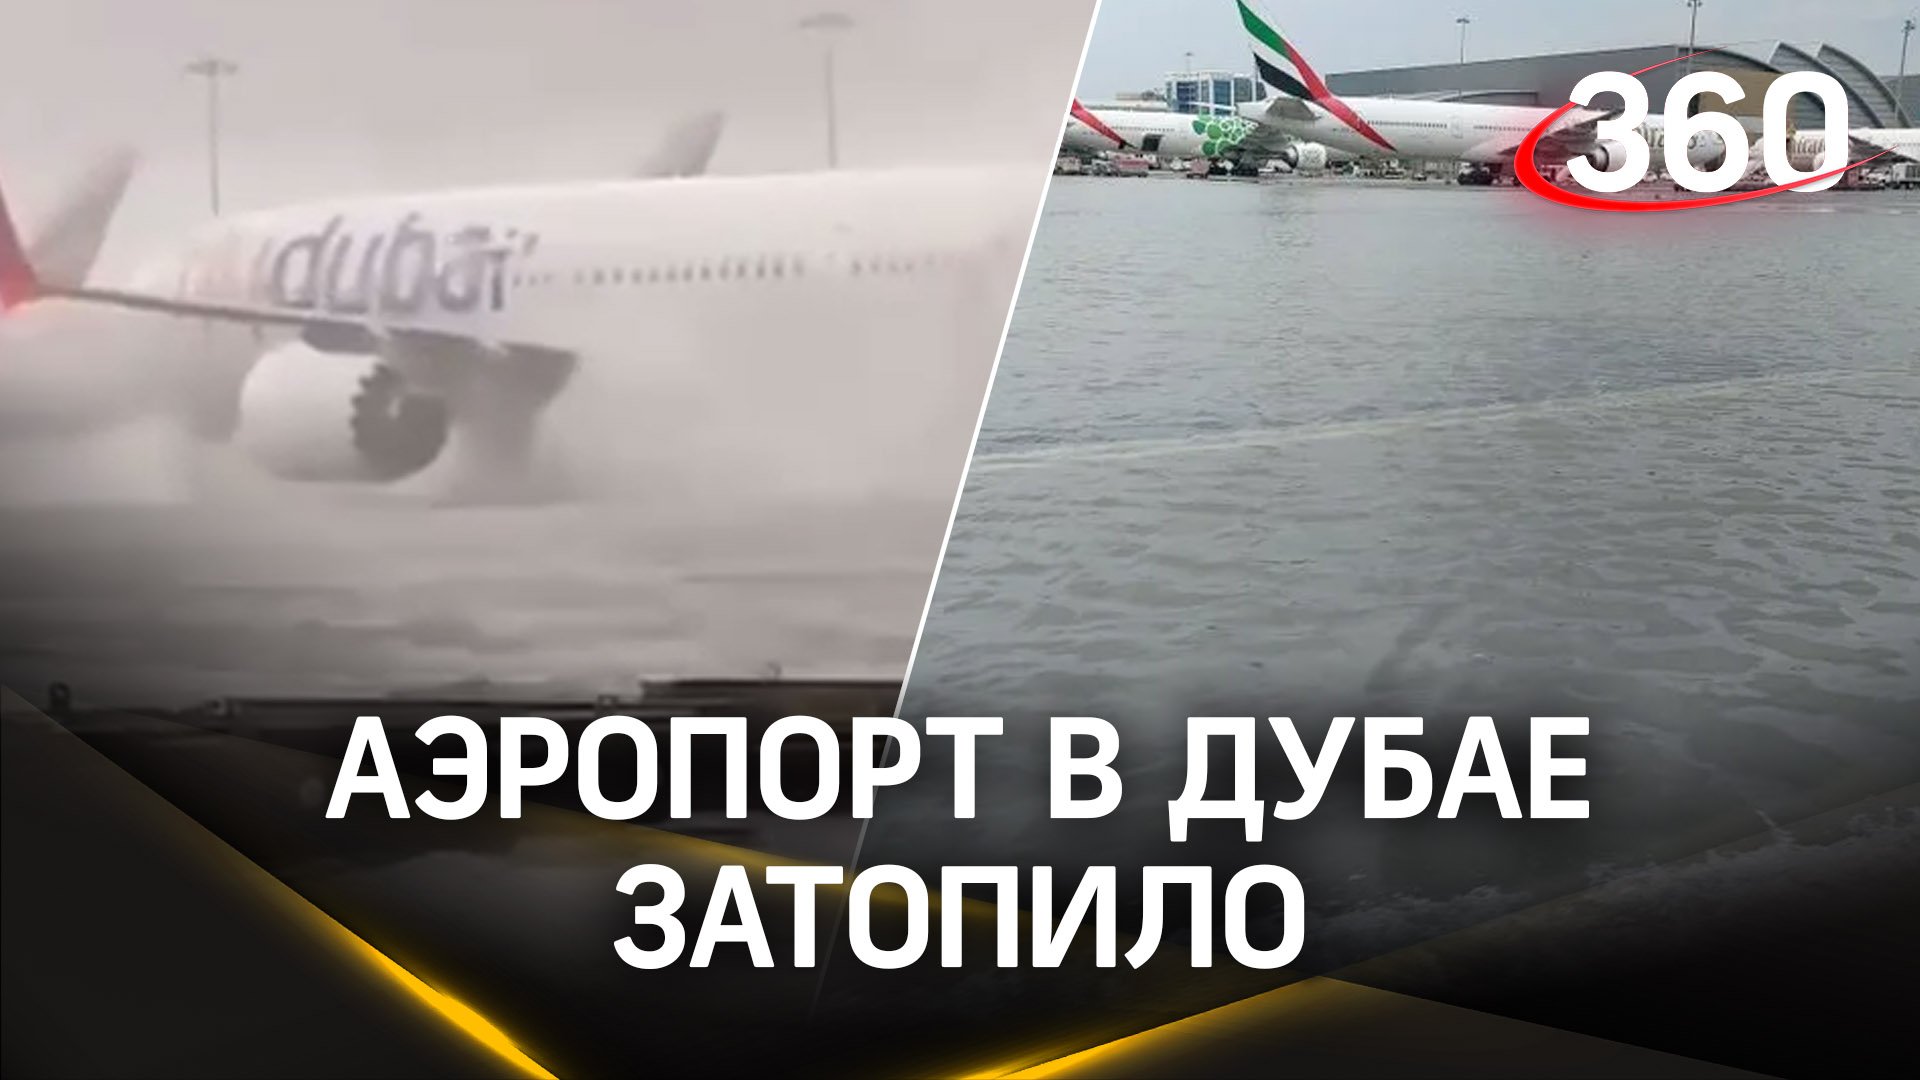 Плавательный самолет: видео из аэропорта Дубая. Там сильные ливни затопили город и аэропорт